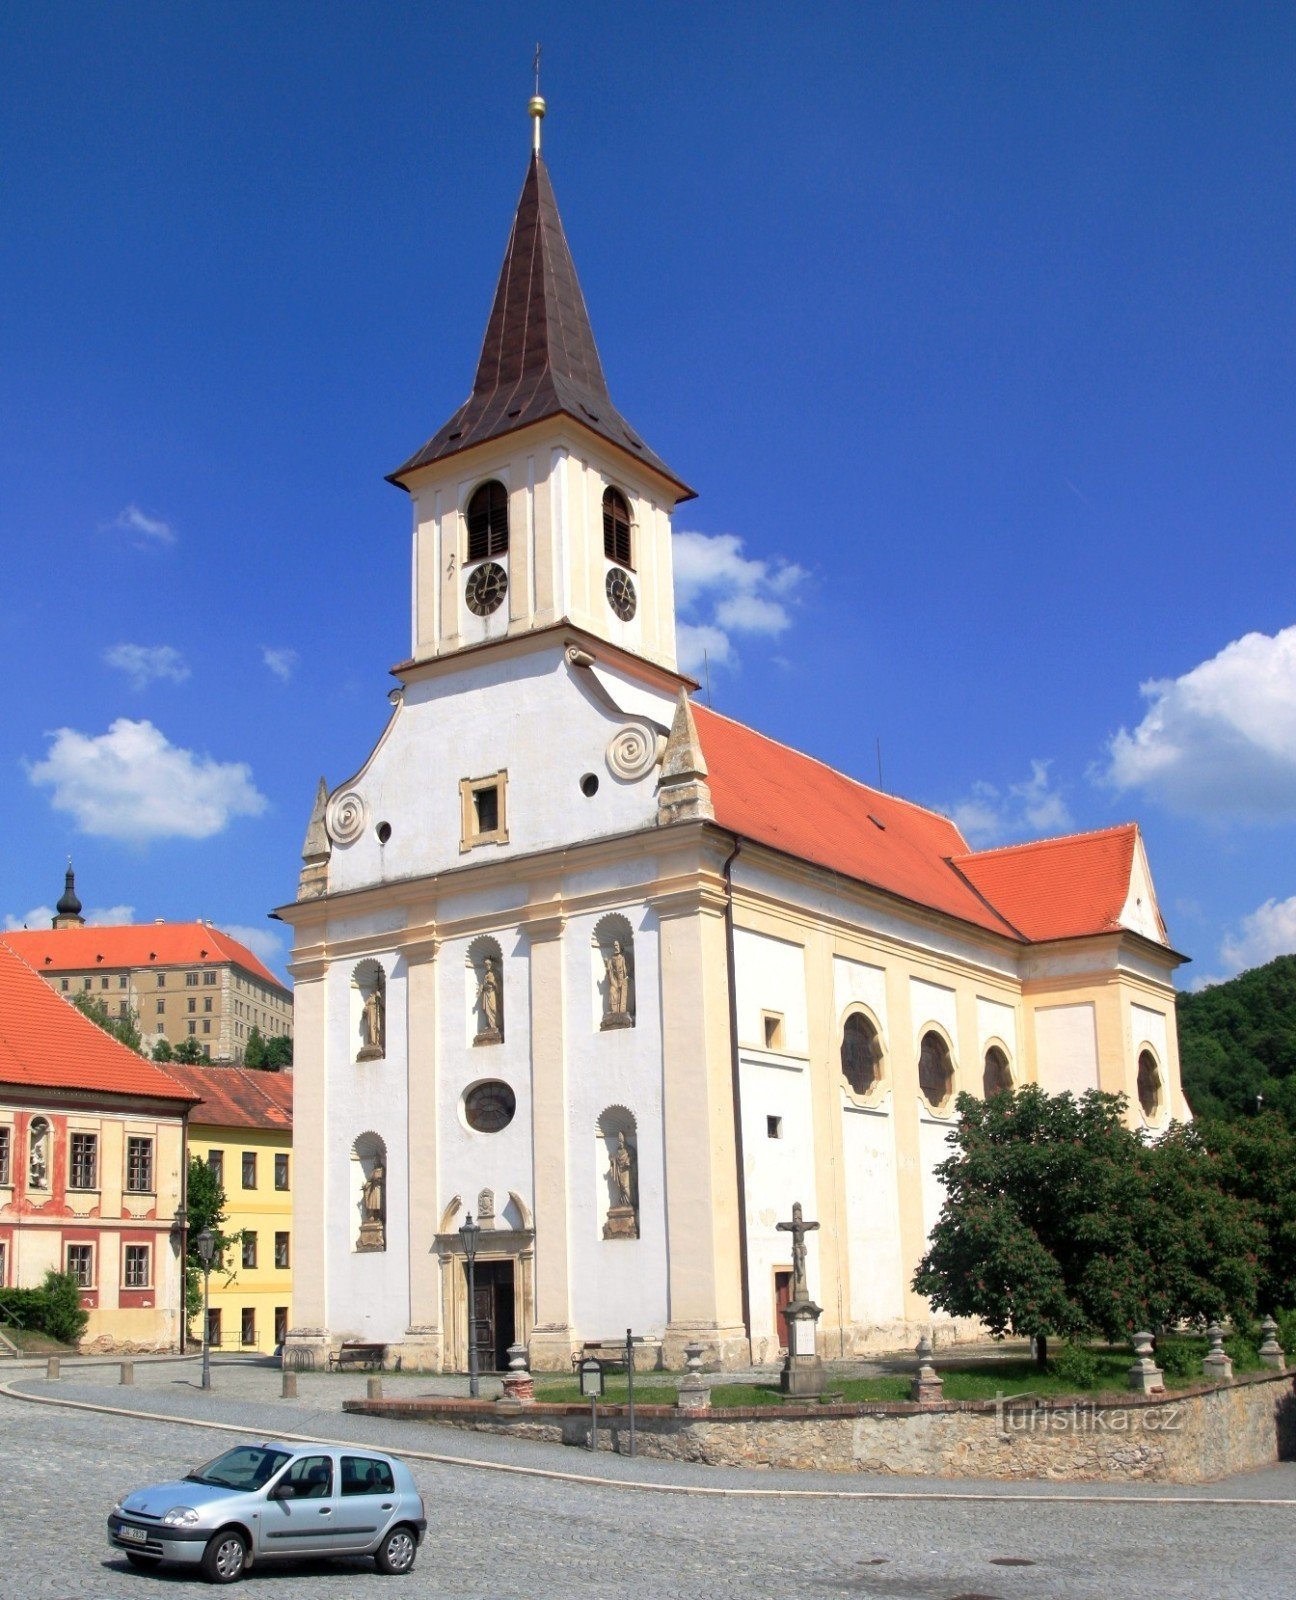 Náměšť nad Oslavou - Church of St. John the Baptist